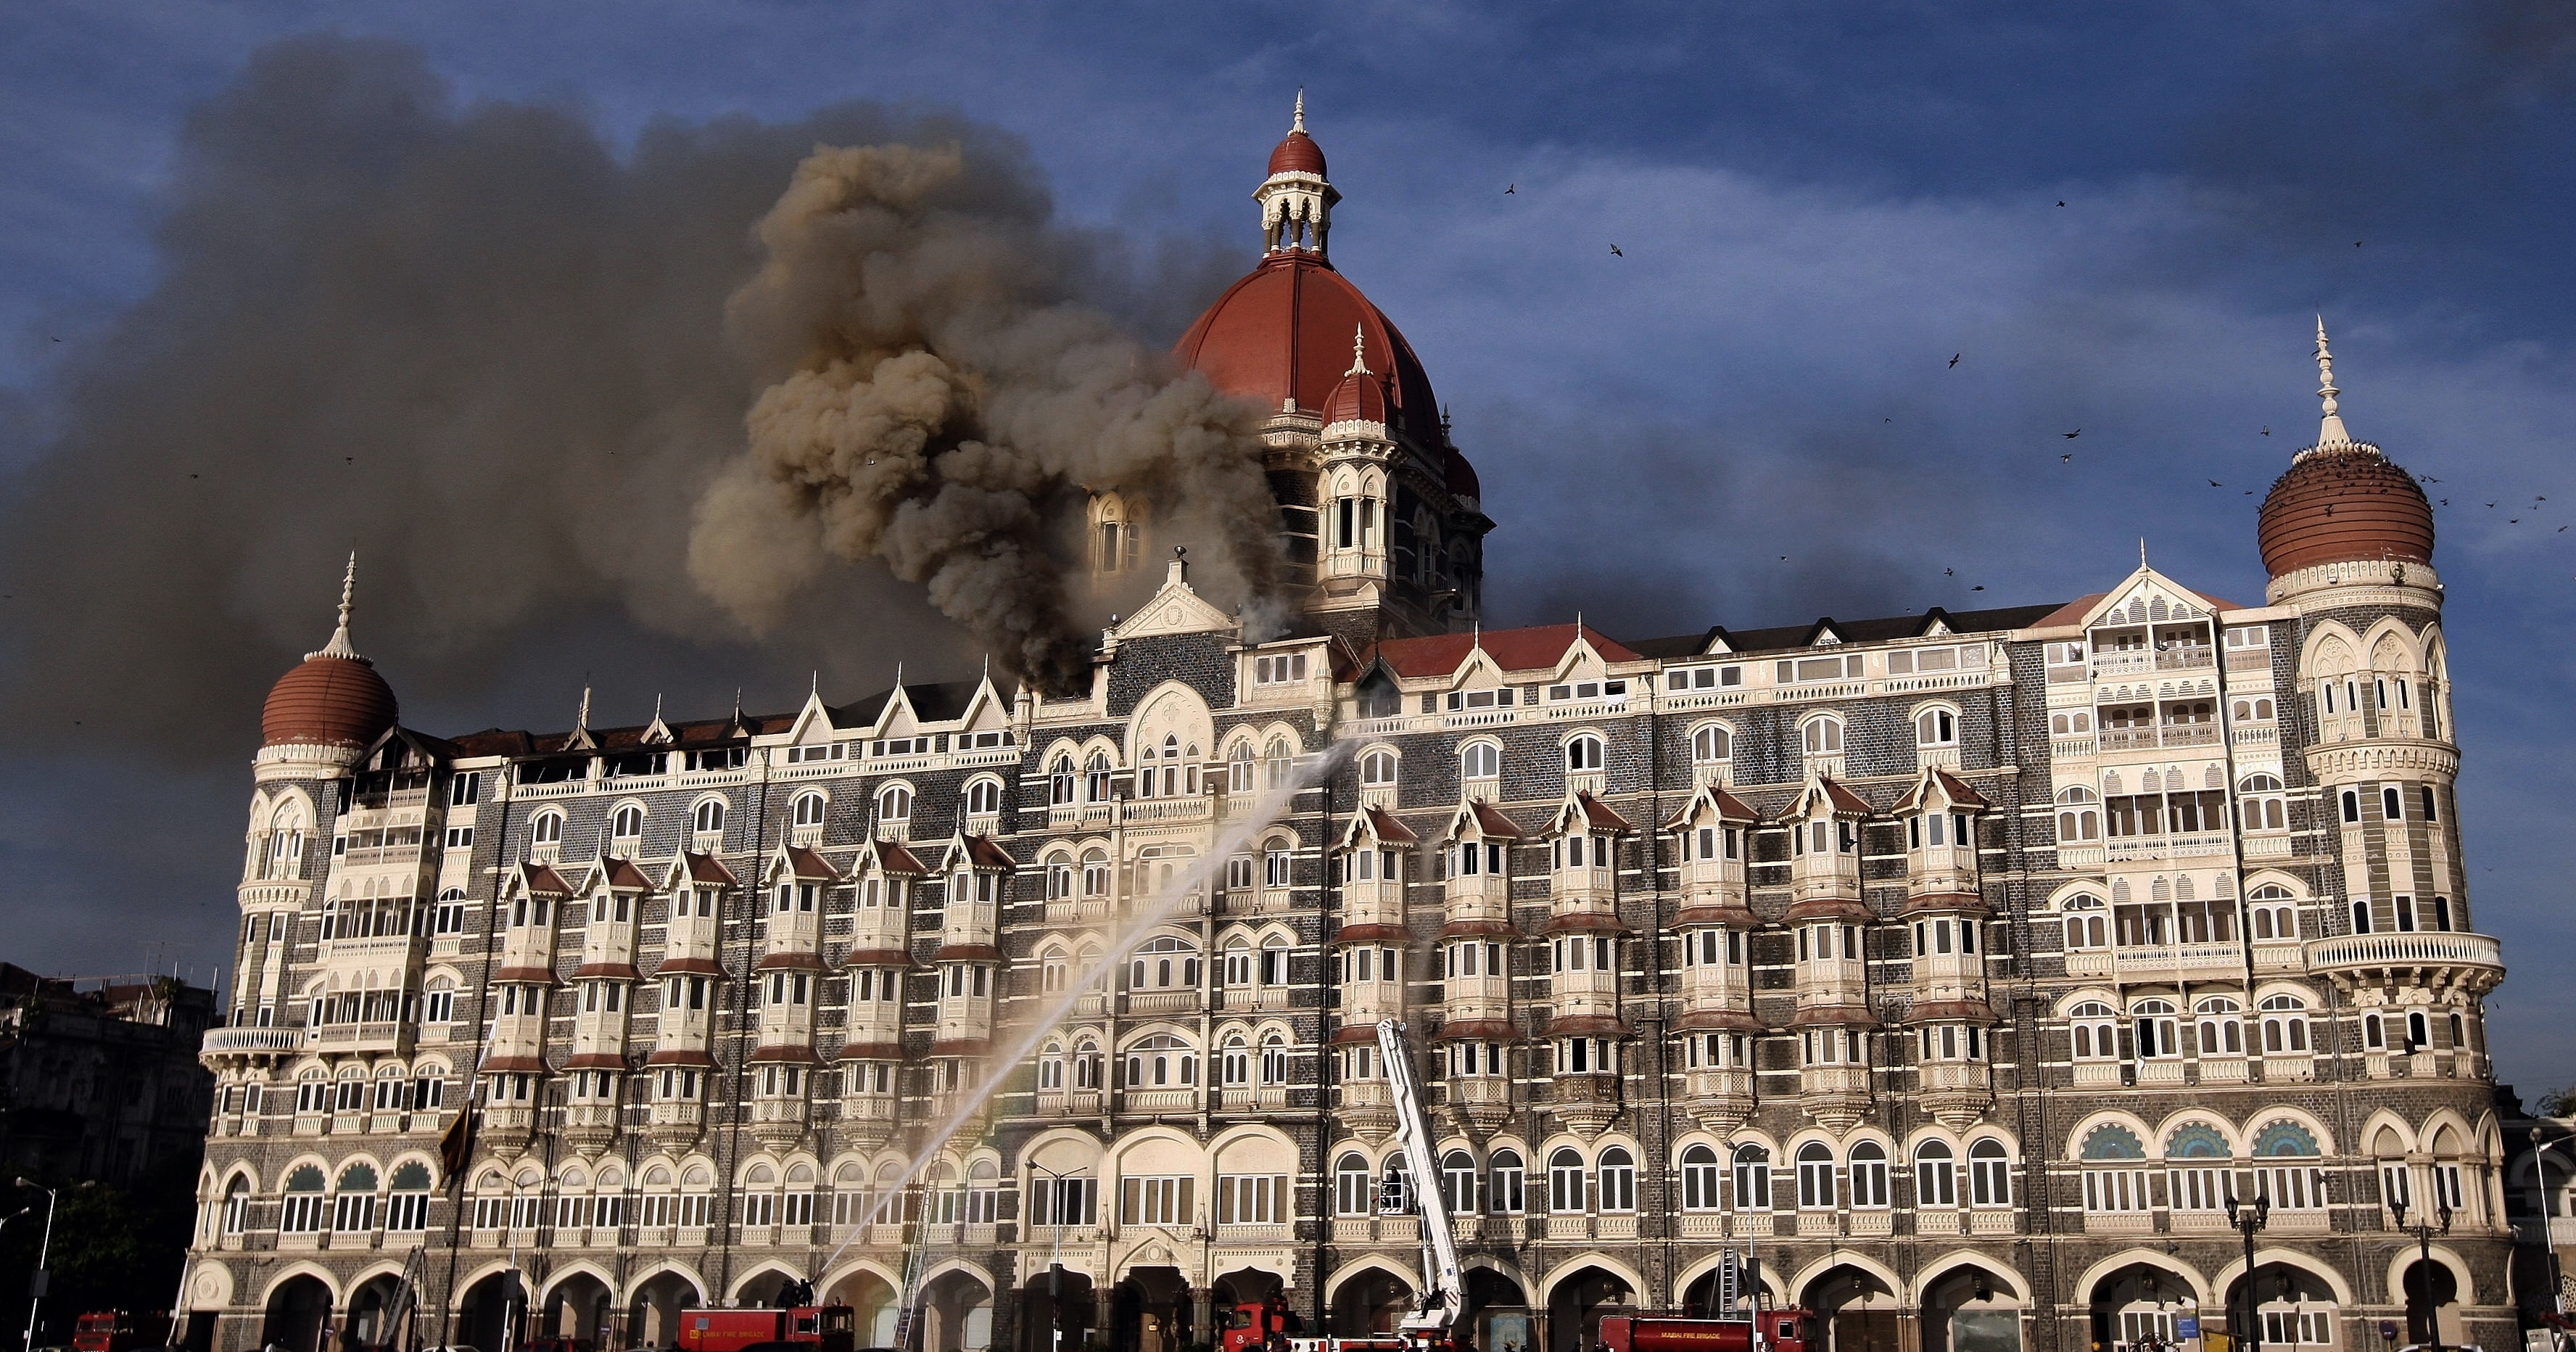 Отель тадж махал 2008. Отель Тадж в Мумбаи. Мумбаи 2008 Тадж Махал теракт. Гостиница Тадж Махал в Мумбаи. Отель Тадж Махал 2008 теракт.